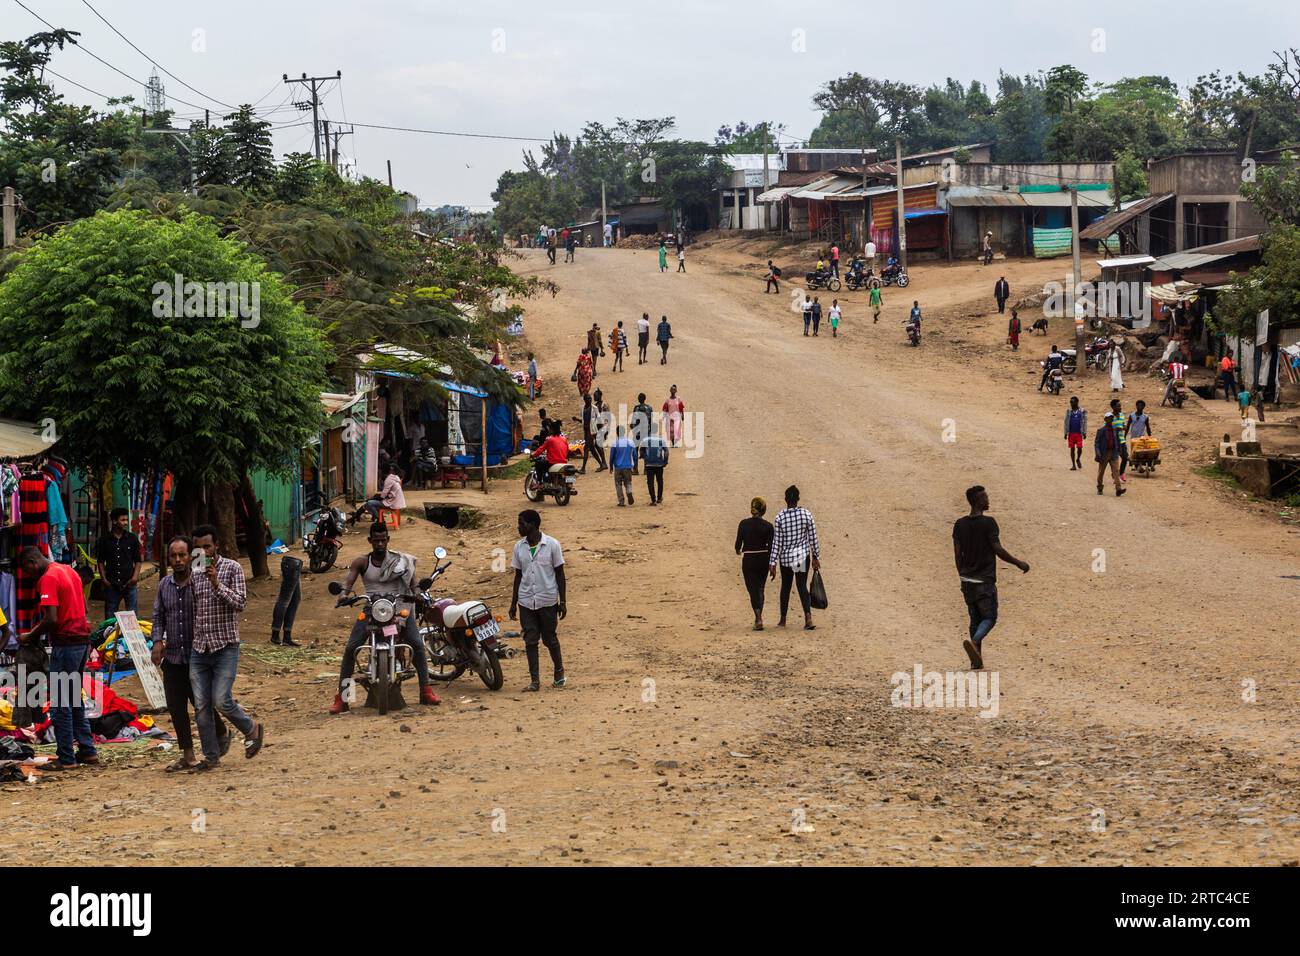 JINKA, ETHIOPIA - FEBRUARY 2, 2020: View of a street in Jinka, Ethiopia Stock Photo